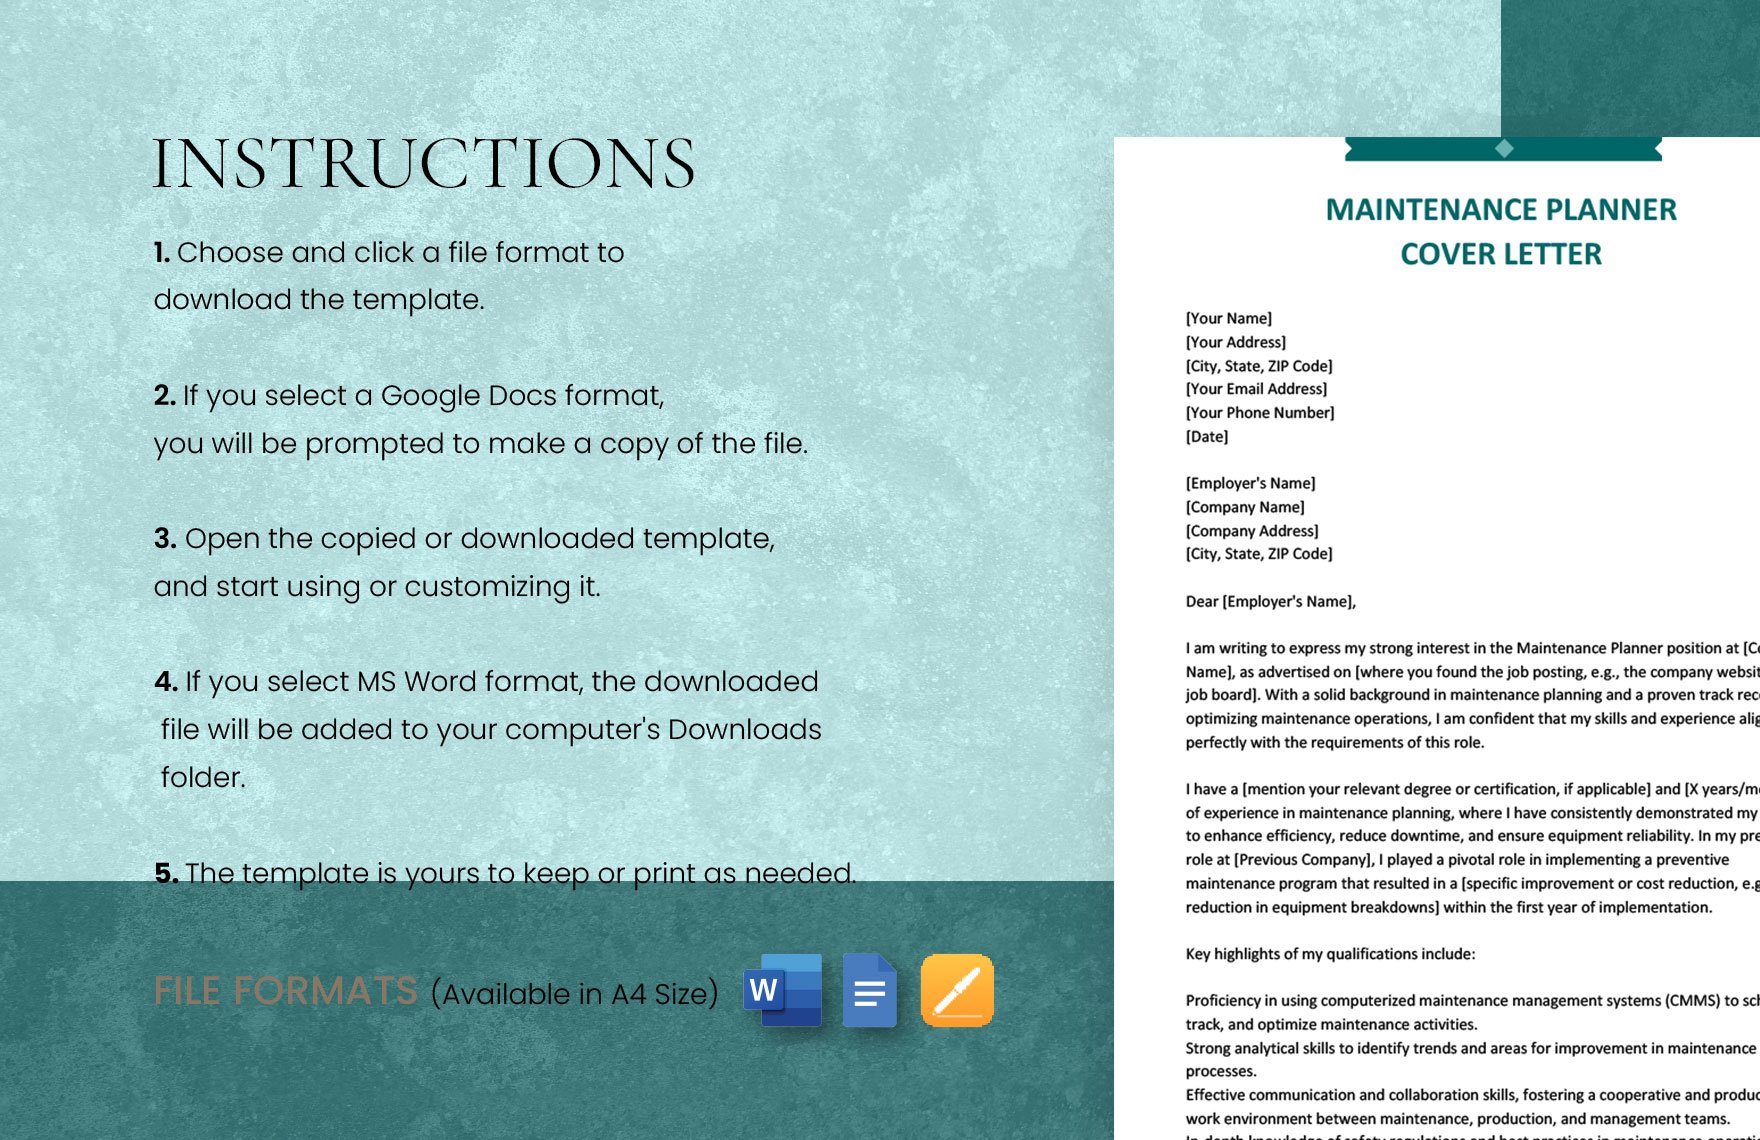 cover letter for maintenance planner